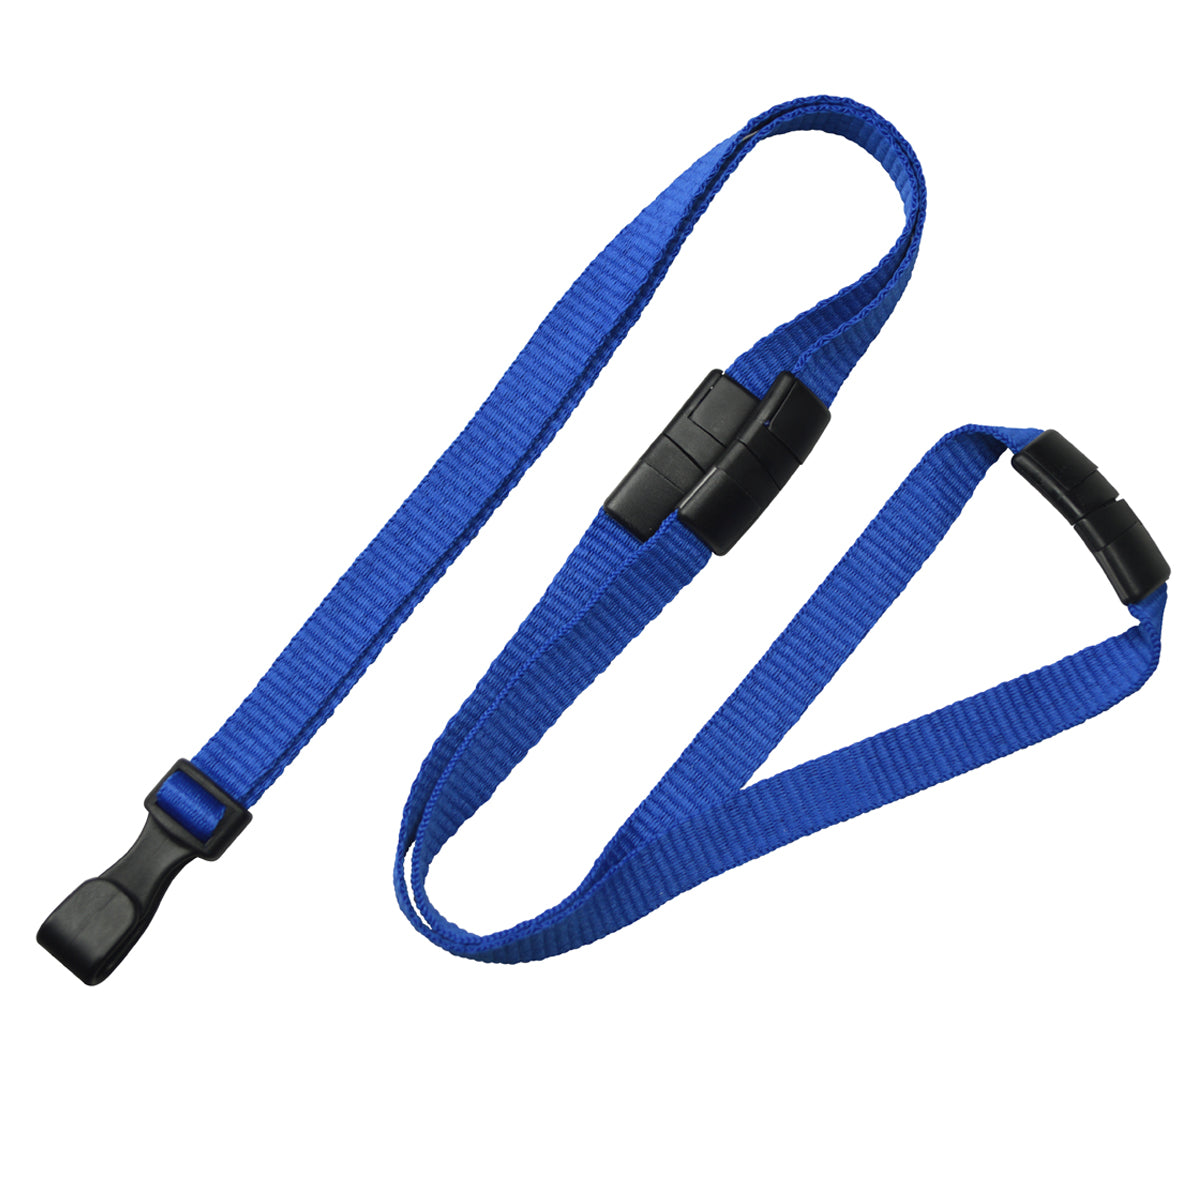 Lanyard Key Chain Badge Holder - Twin Pack Tri Blue